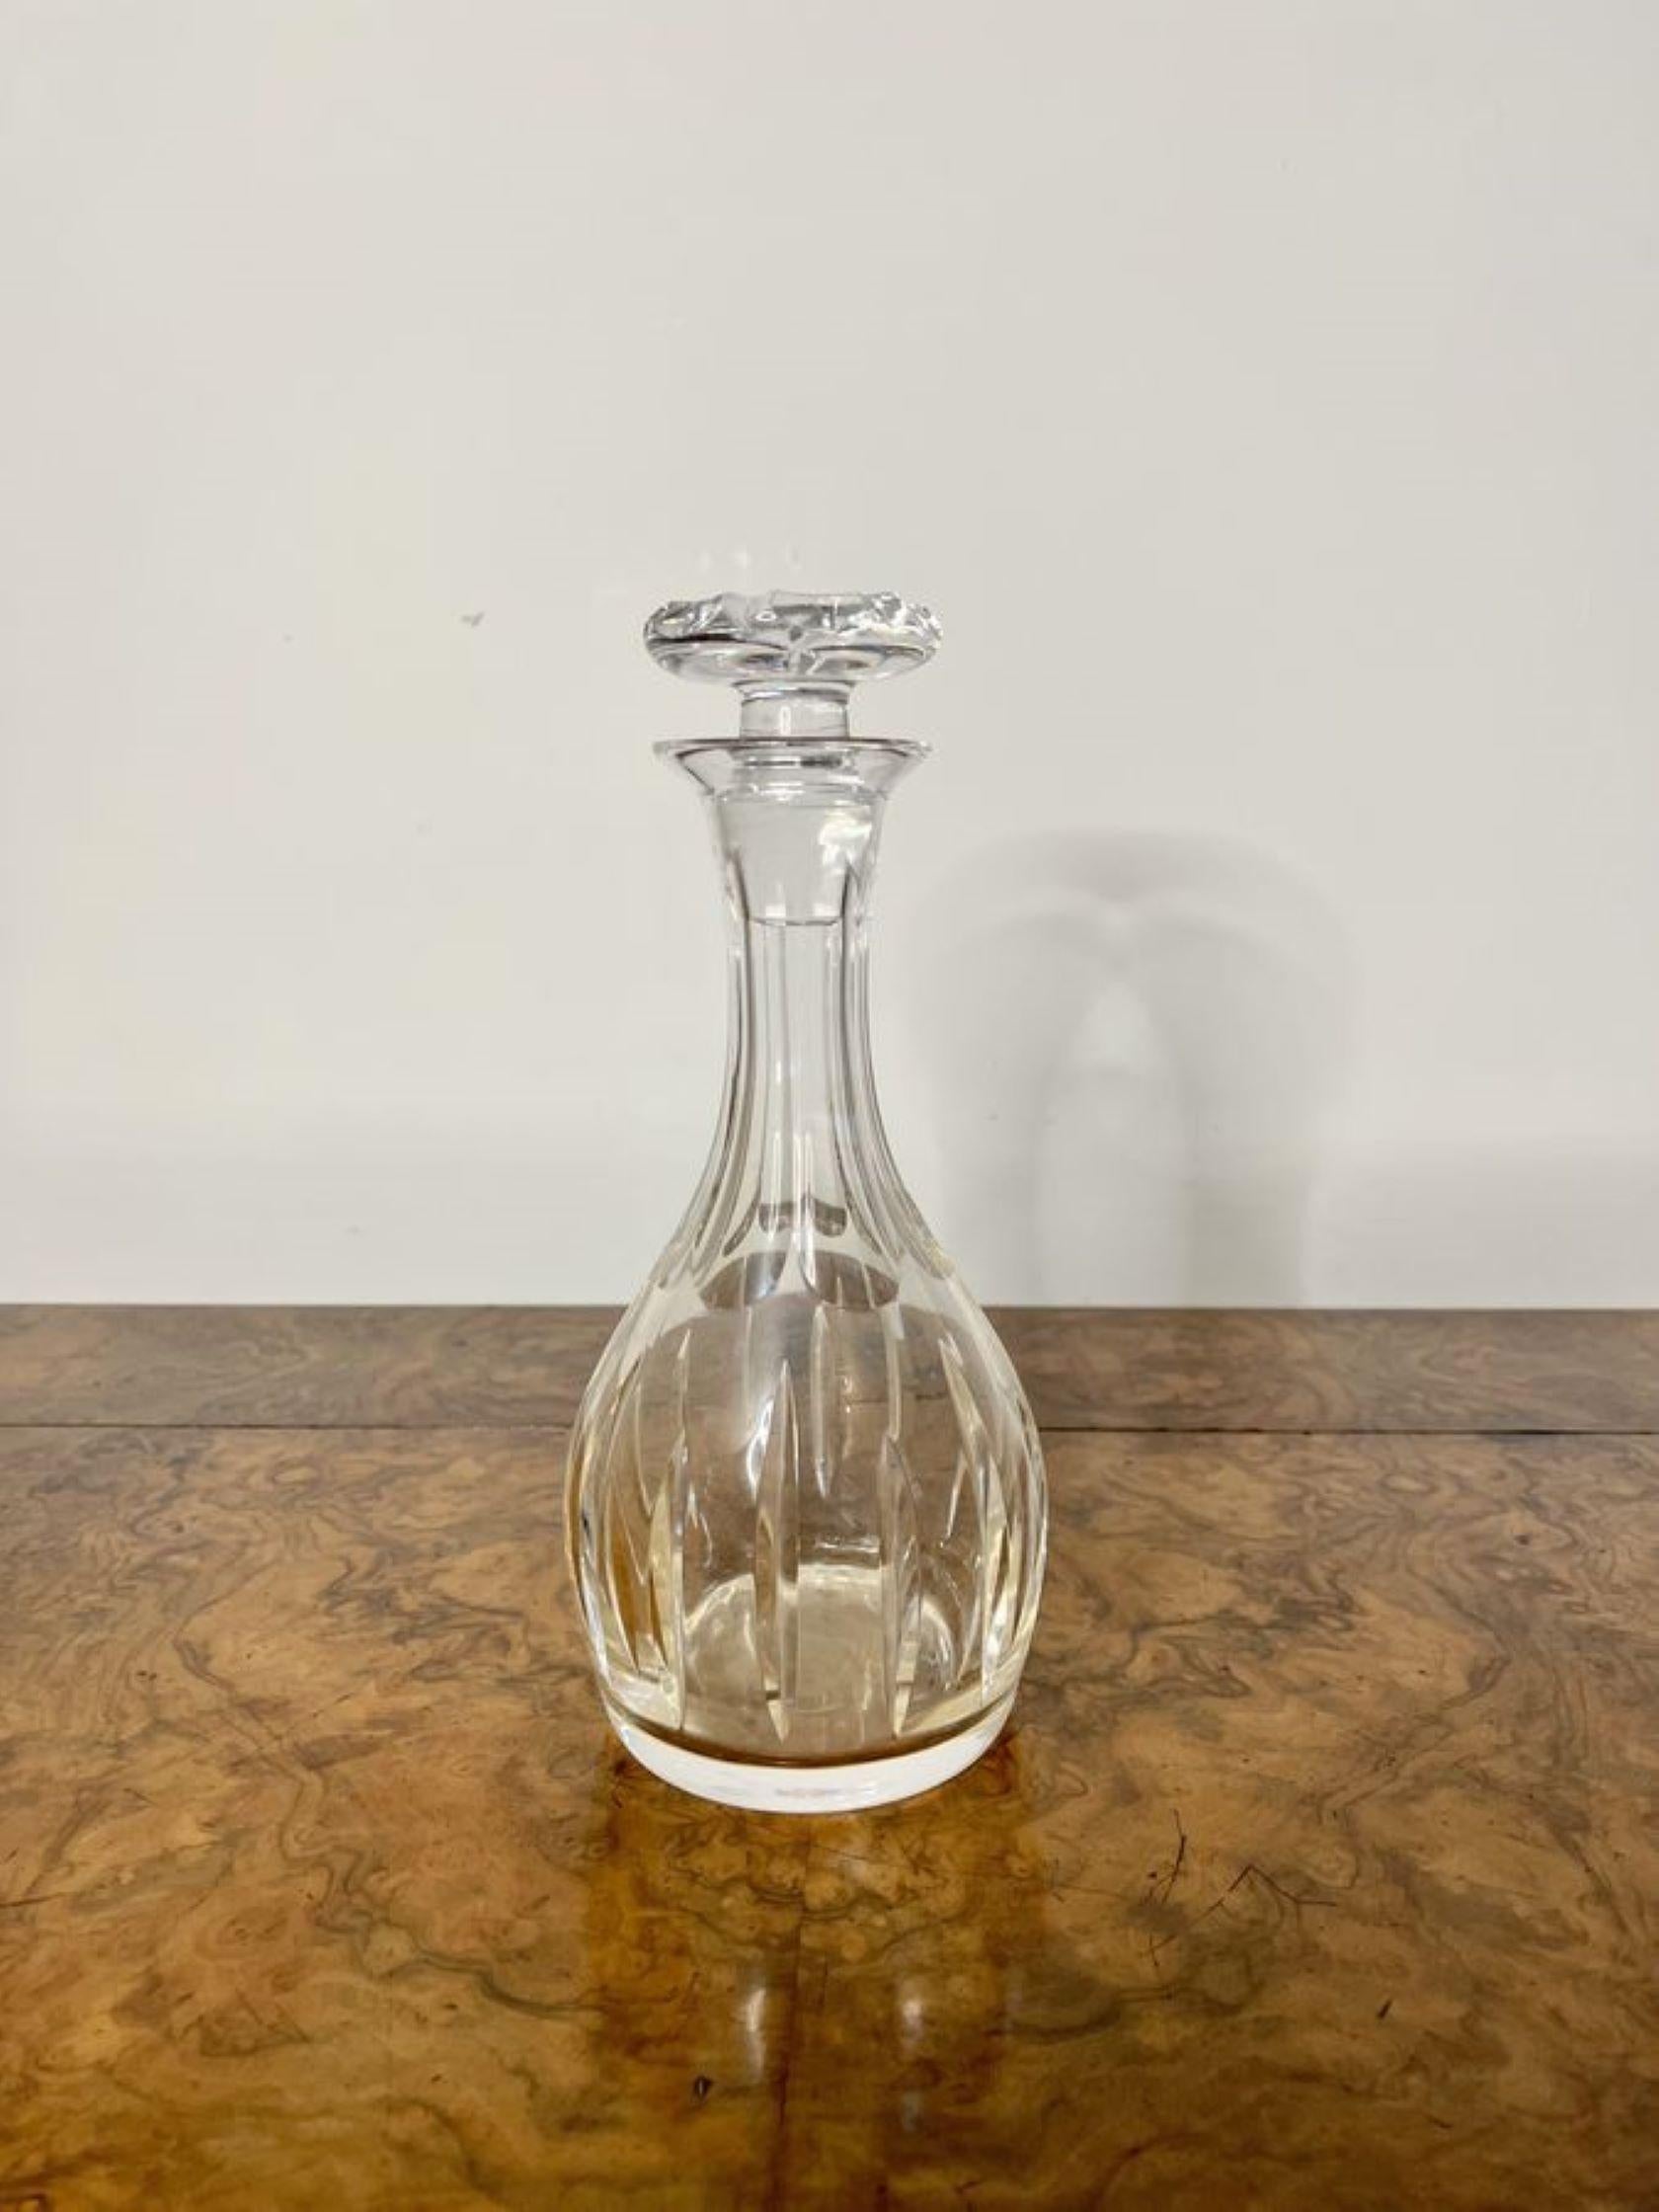 Carafe à décanter ancienne de l'époque édouardienne de qualité avec le bouchon d'origine en verre taillé en forme de champignon.

D. 1900